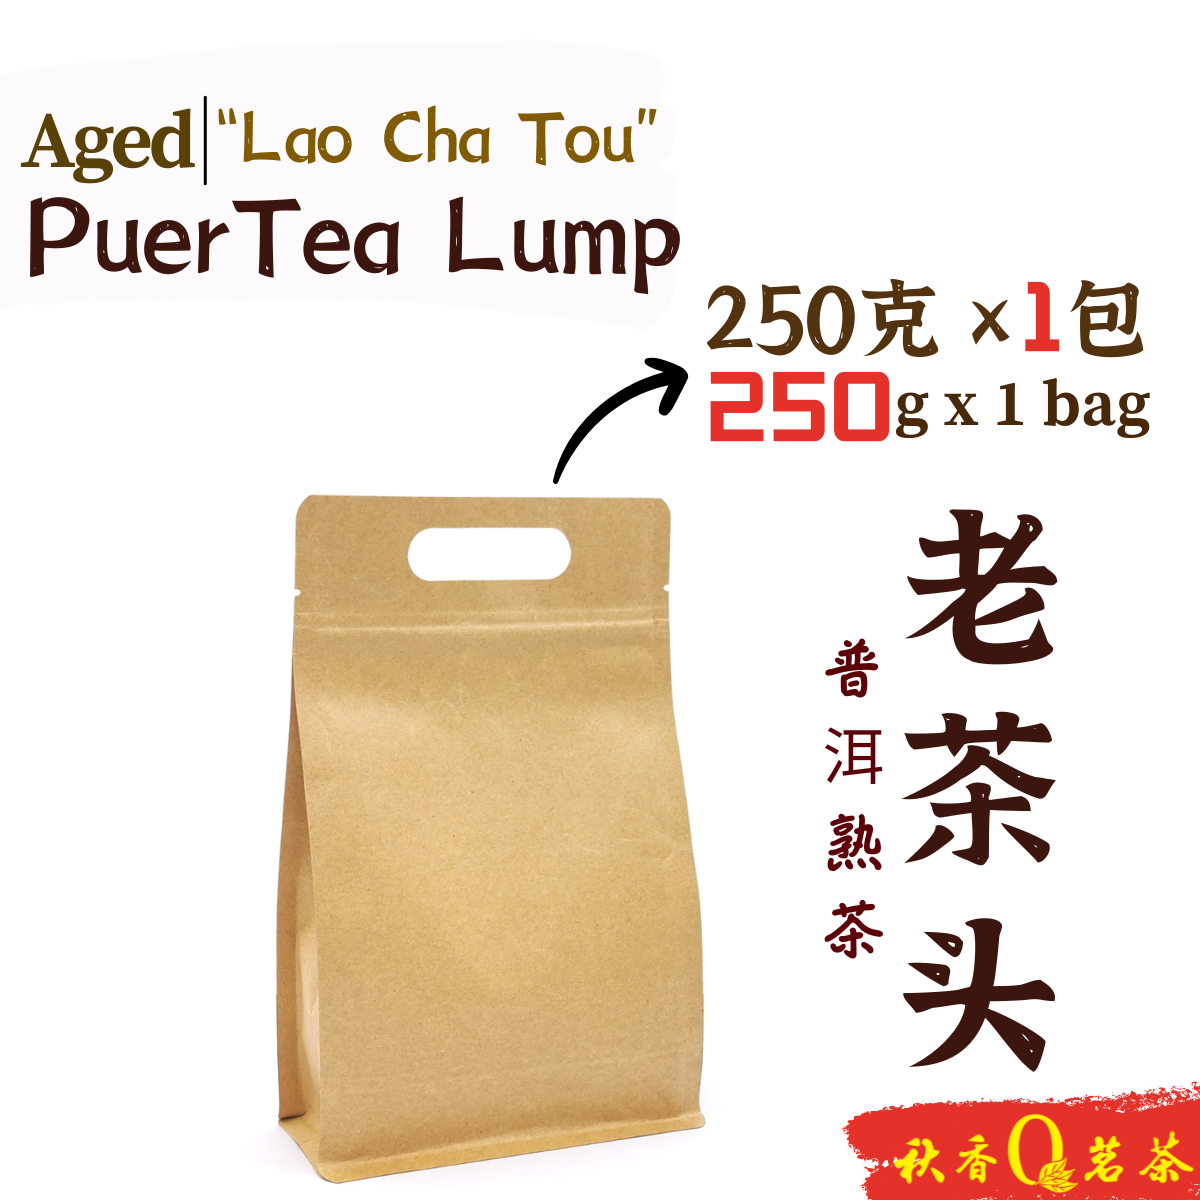 老茶头 Aged Puer tea Lump "Lao Cha Tou" (2018) (250g)｜【普洱熟茶 Ripe Puer tea】